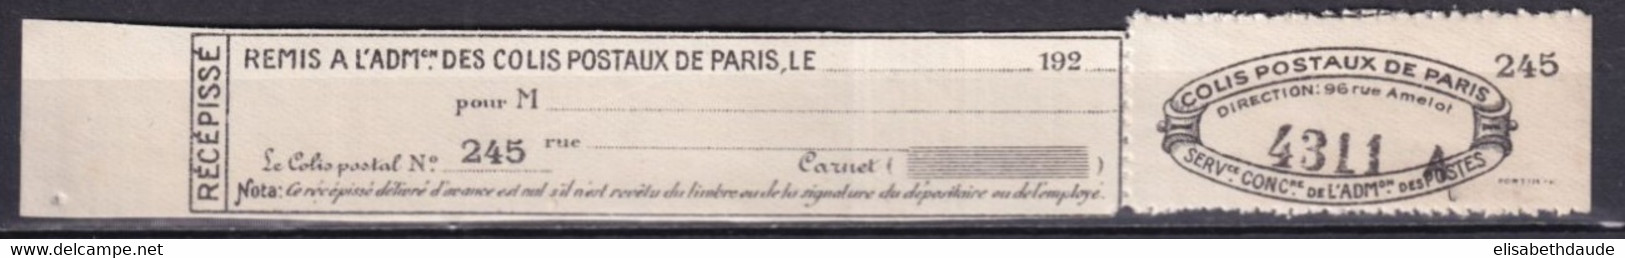 COLIS POSTAUX PARIS POUR PARIS  - 1926 - MAURY N°122 (*) NSG COMPLET ! - COTE 2009 = 40 EUR. - Neufs